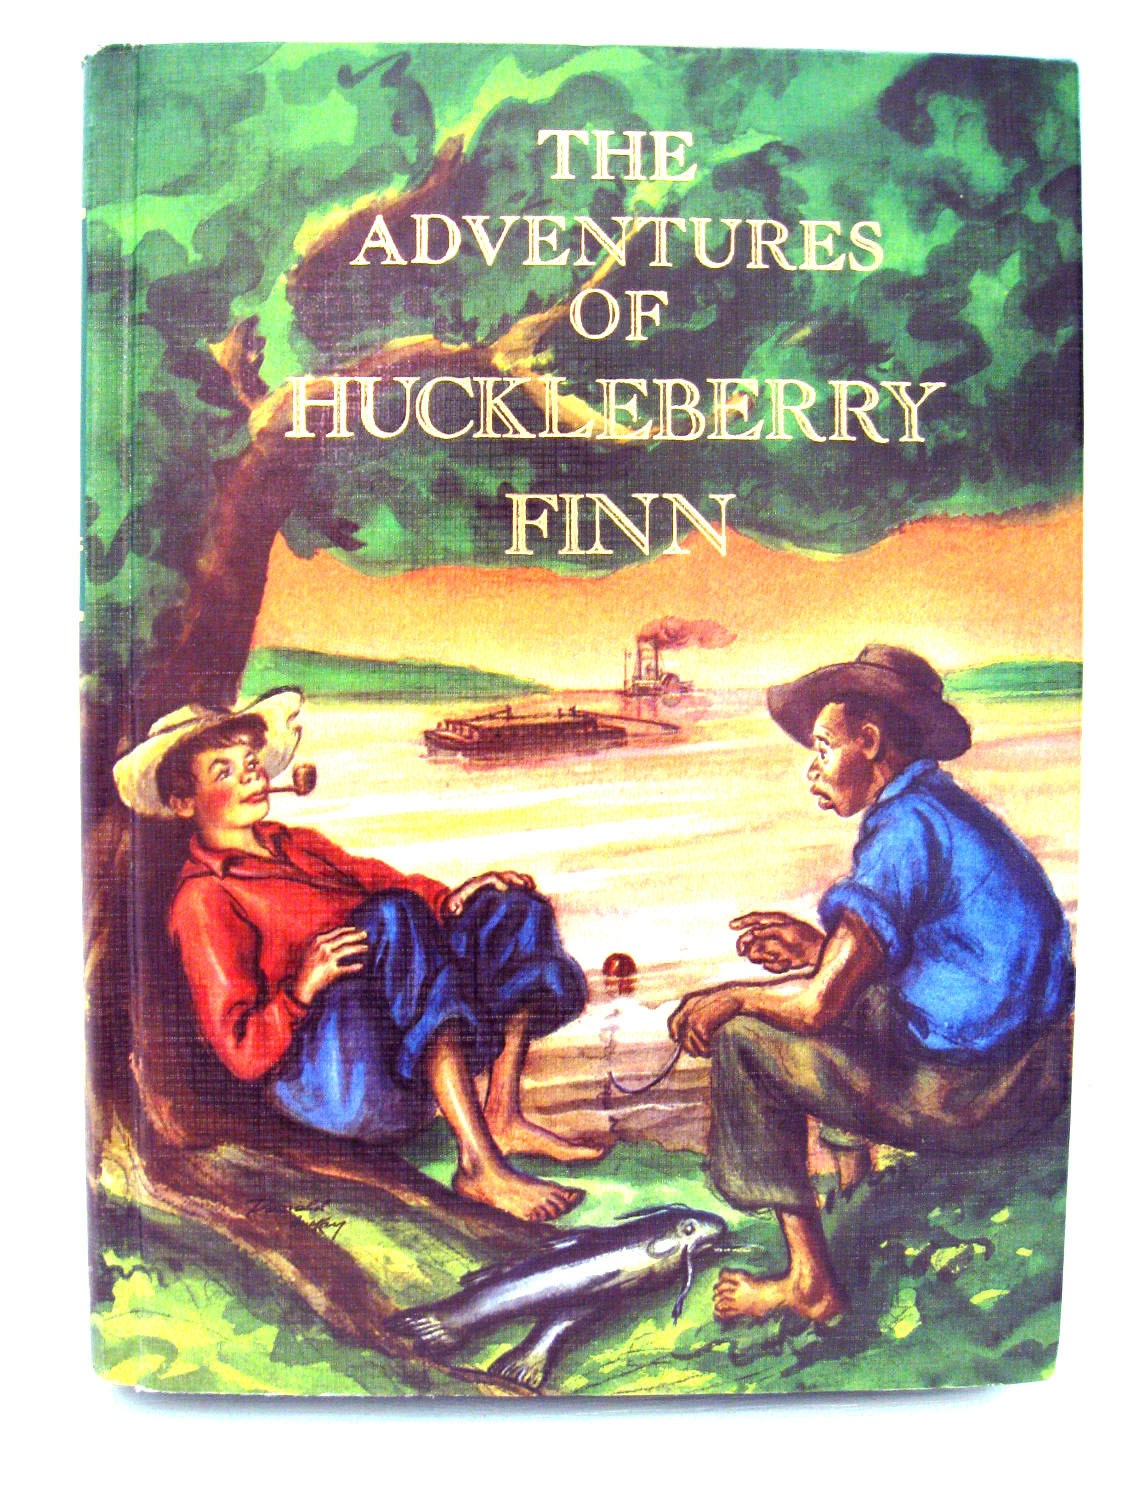 The adventures of huckleberry finn mark twain. The Adventures of Huckleberry Finn book. Huckleberry Finn by Mark Twain. Mark Twain the Adventures of Huckleberry Finn. The Adventures of Huckleberry Finn описание.